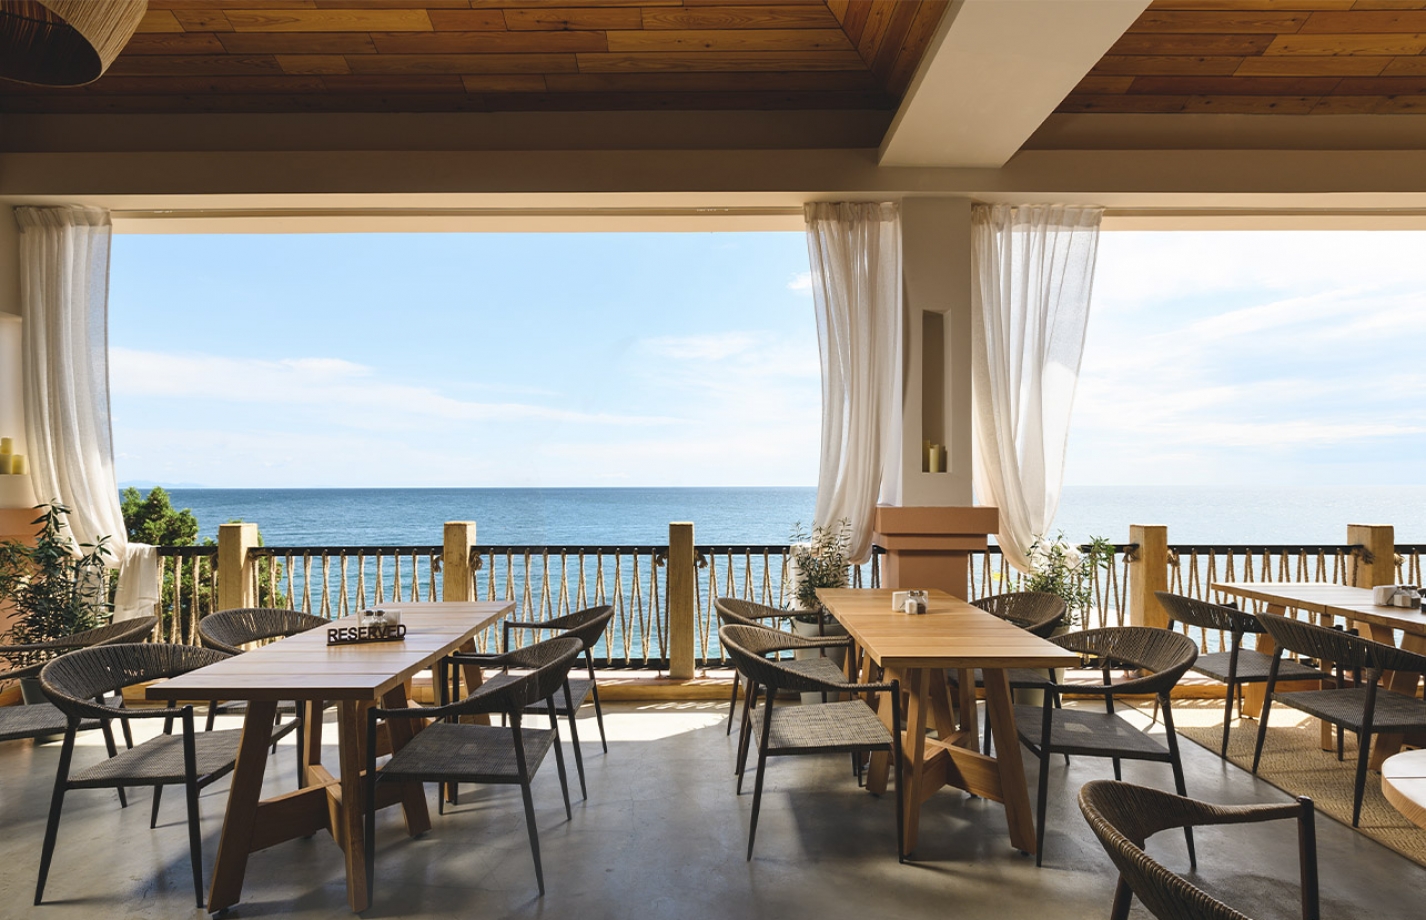 В отель Море Спа Резорт в Алуште стоит приехать хотя бы из-за морской кухни ресторана Дорадо